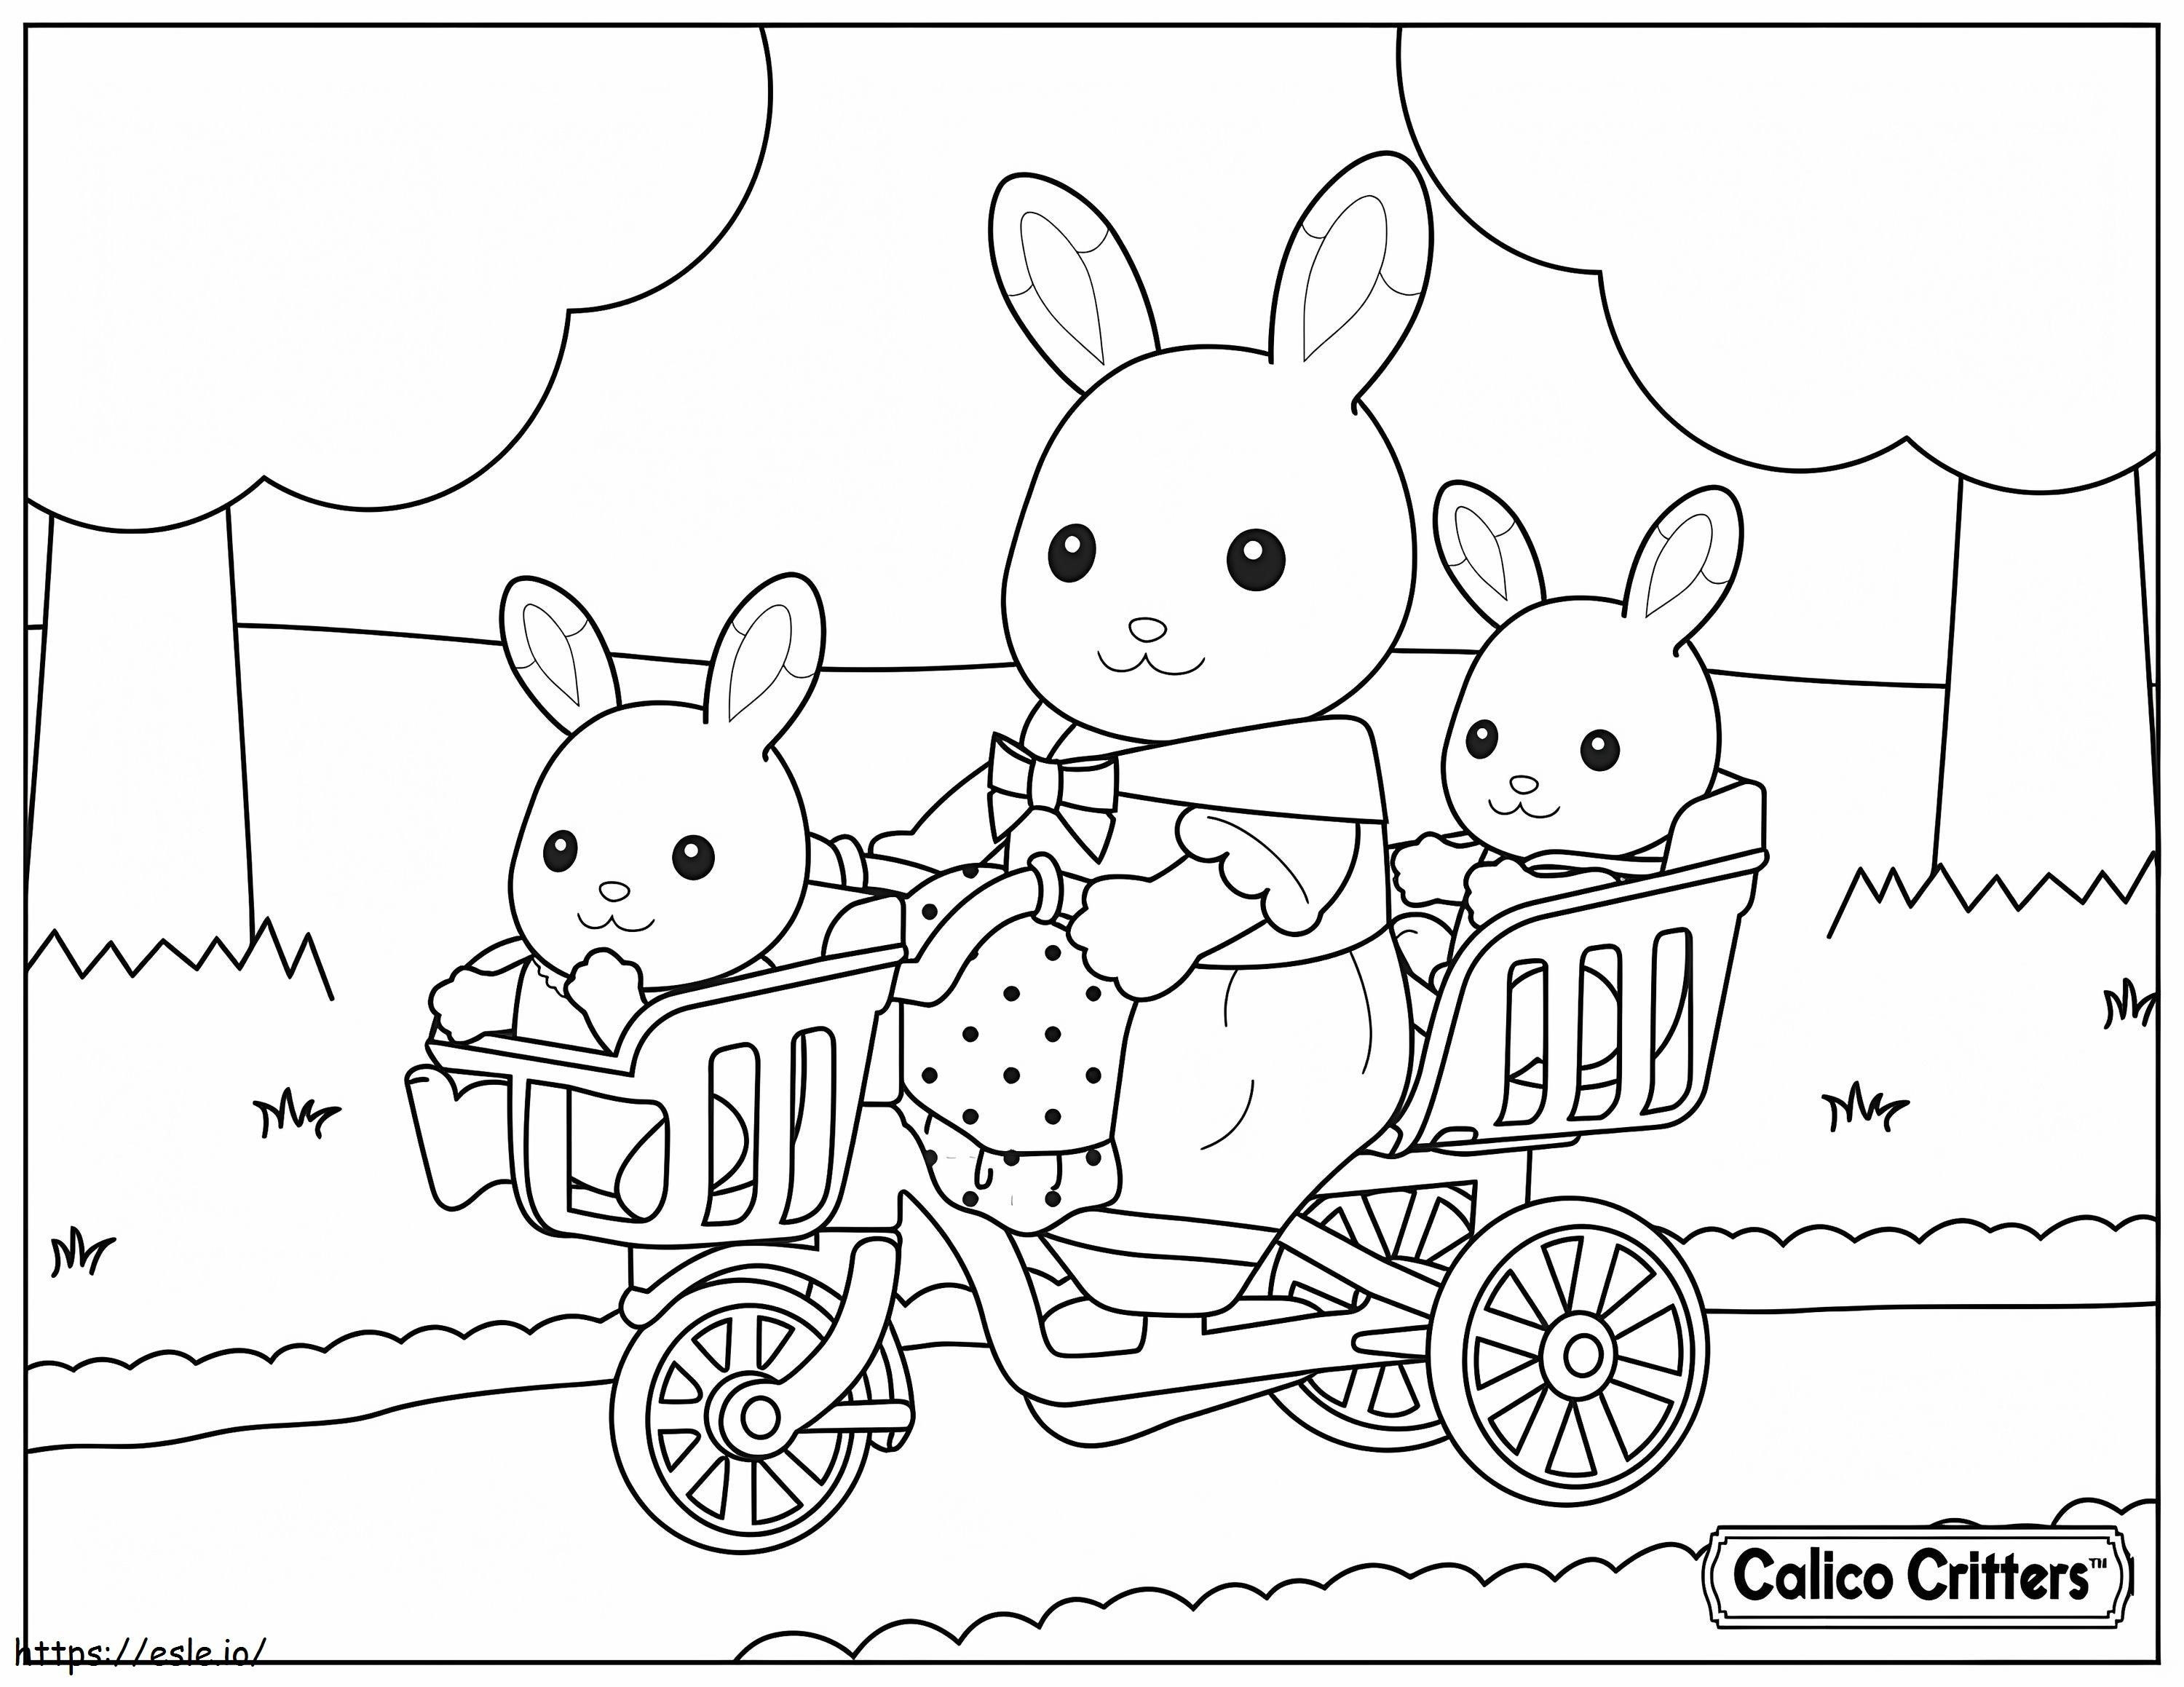  1515174989Calico Critters ja vauvan pyörä värityskuva